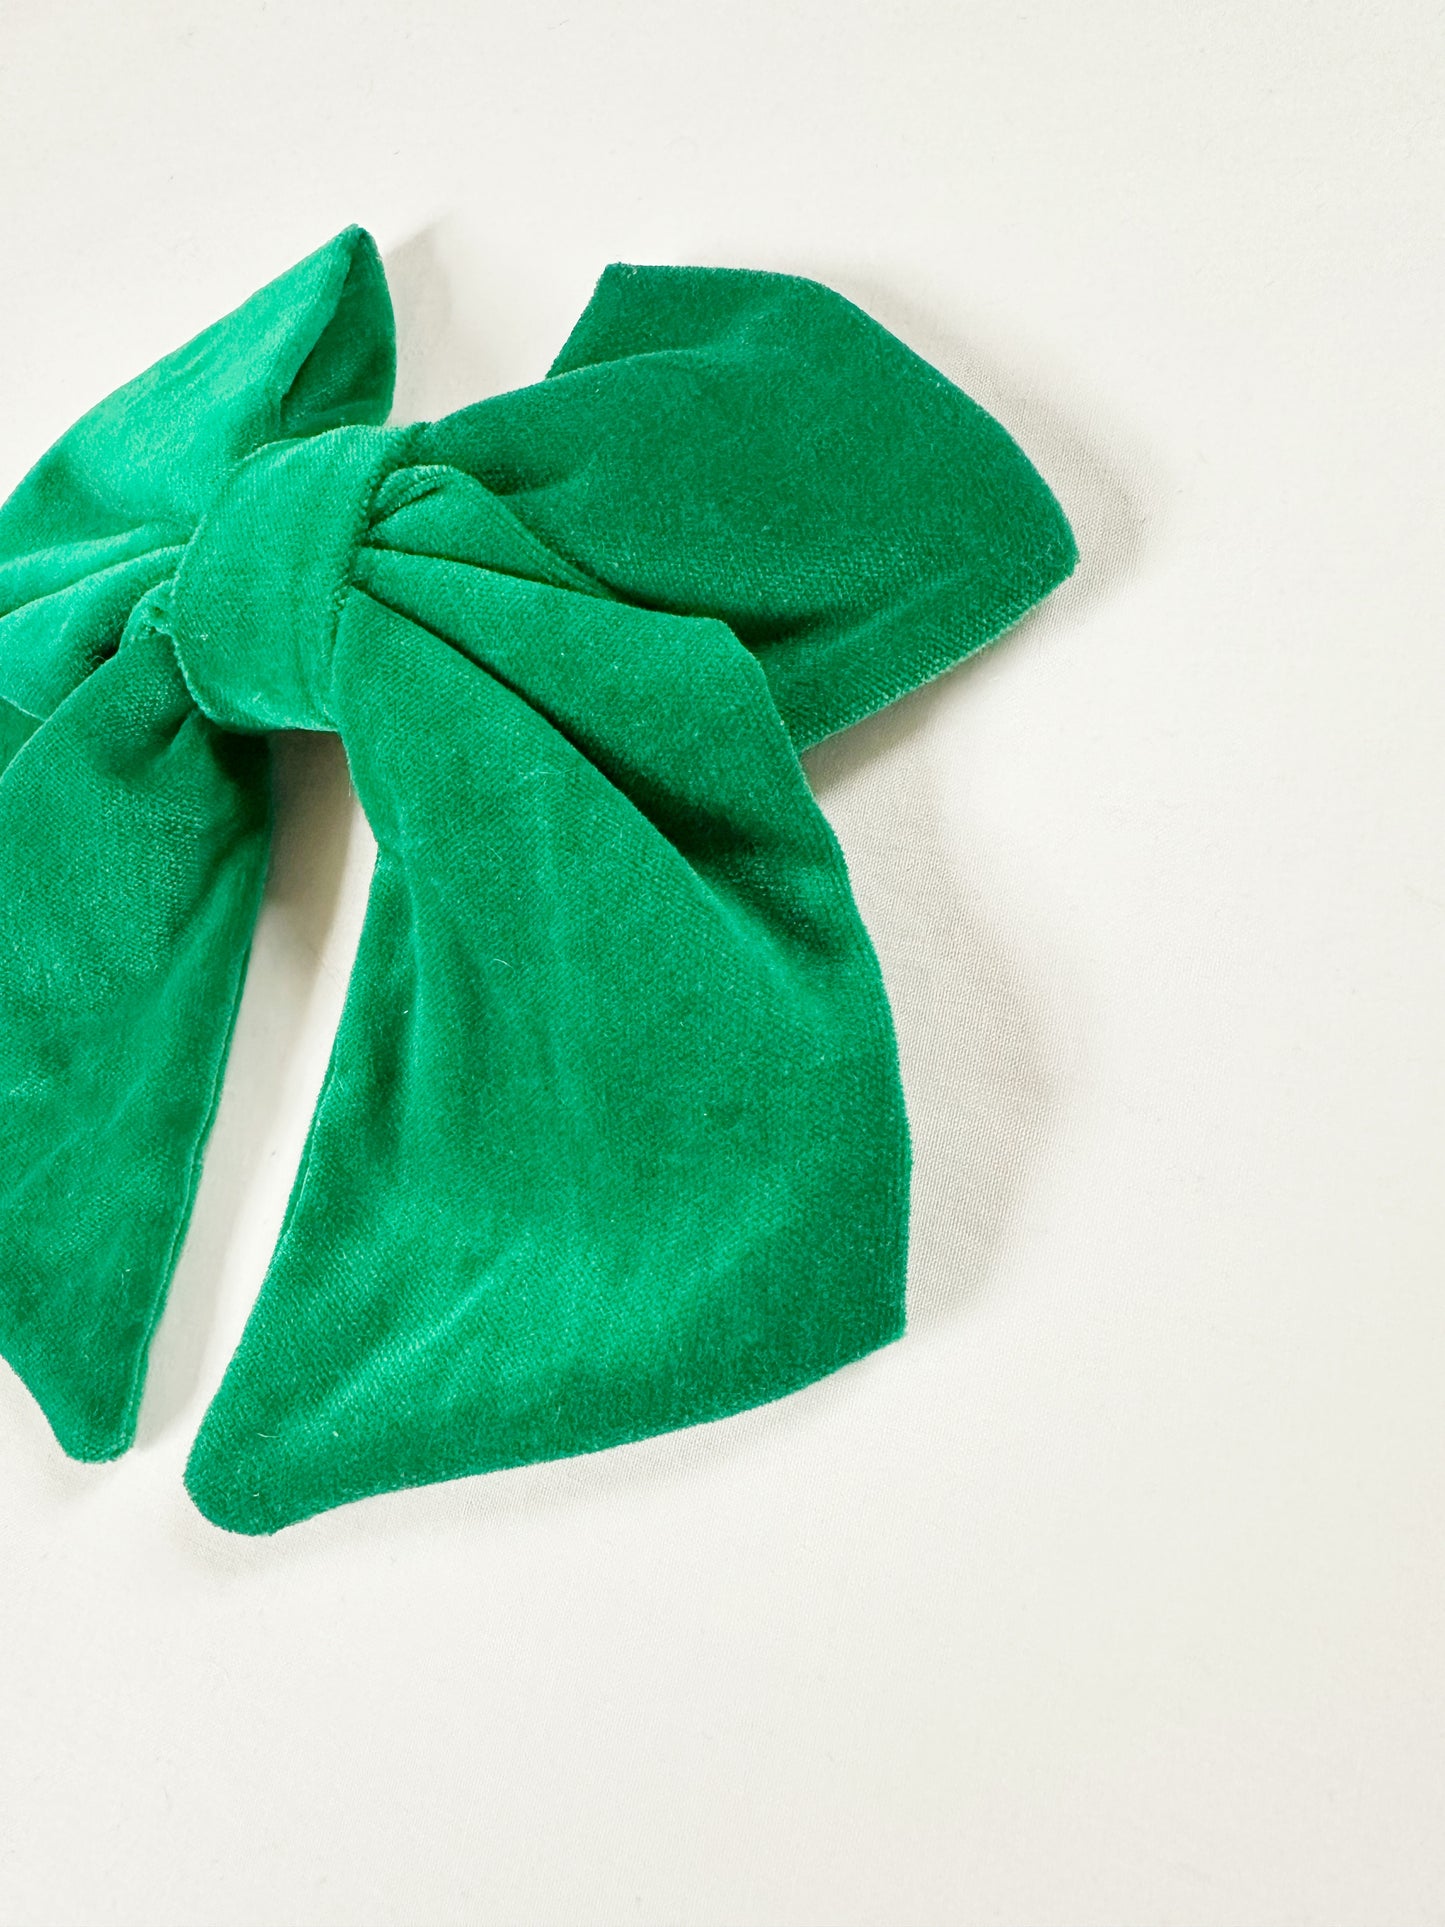 Hair Bow in emerald green velvet